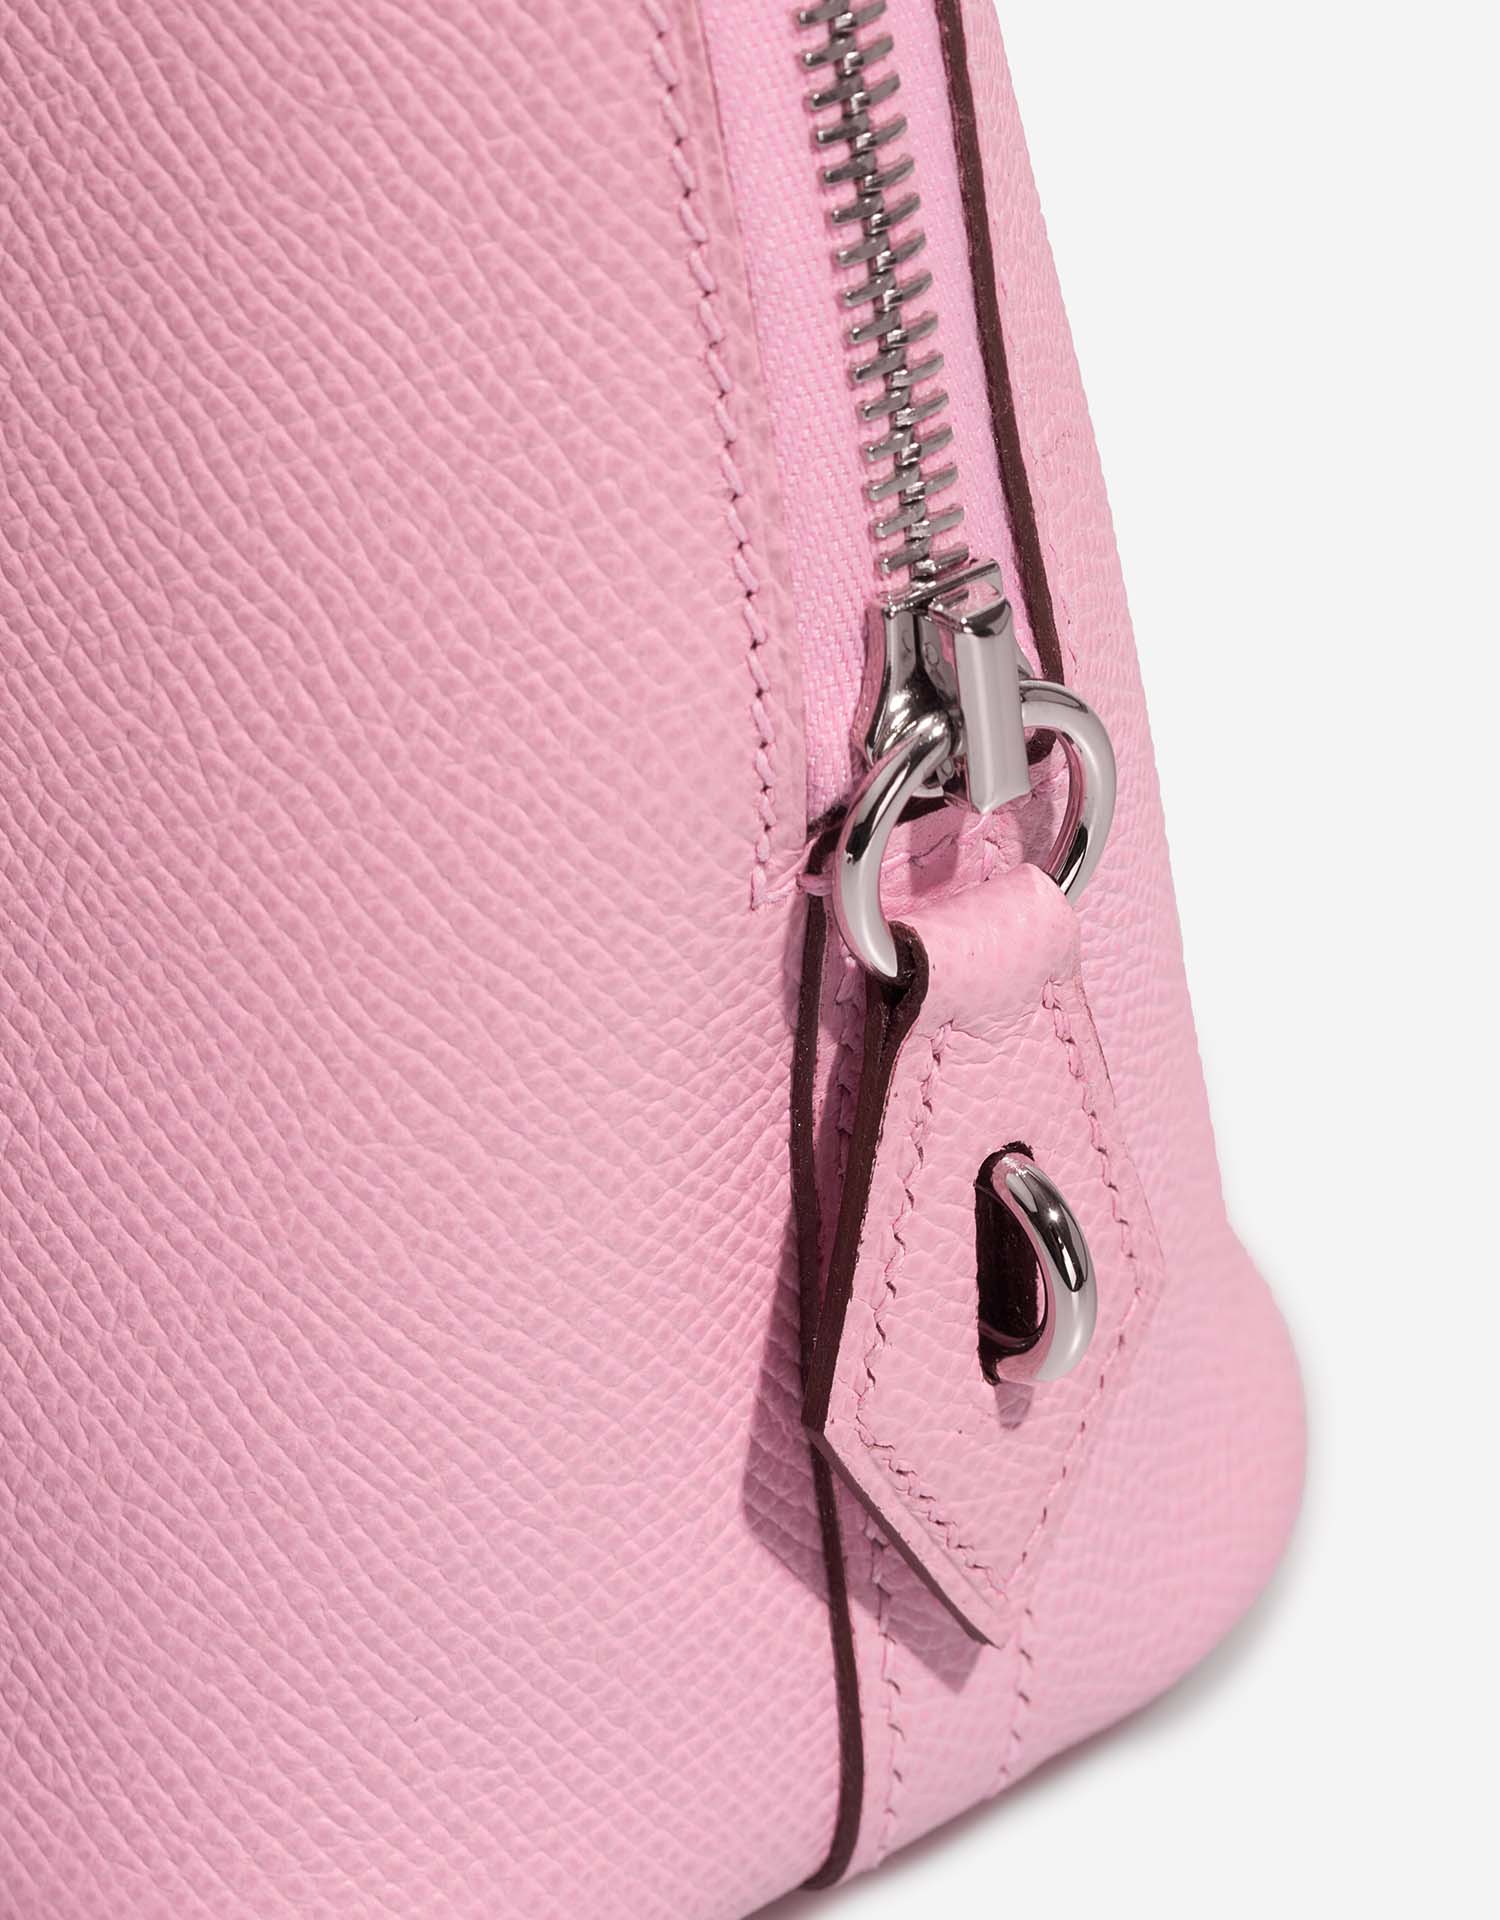 Hermès Bolide 25 MauveSylvestre Closing System  | Sell your designer bag on Saclab.com